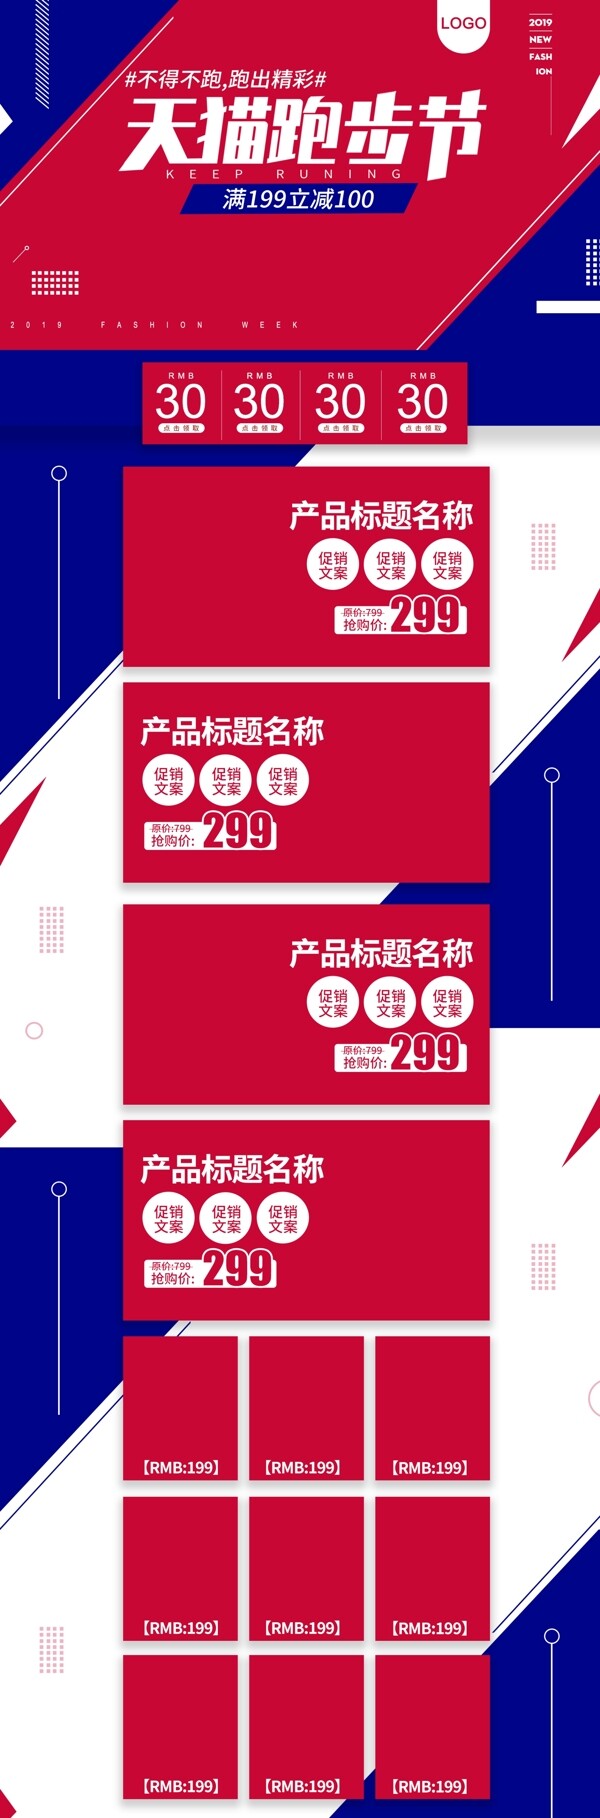 红蓝天猫跑步节简约时尚电商首页模板